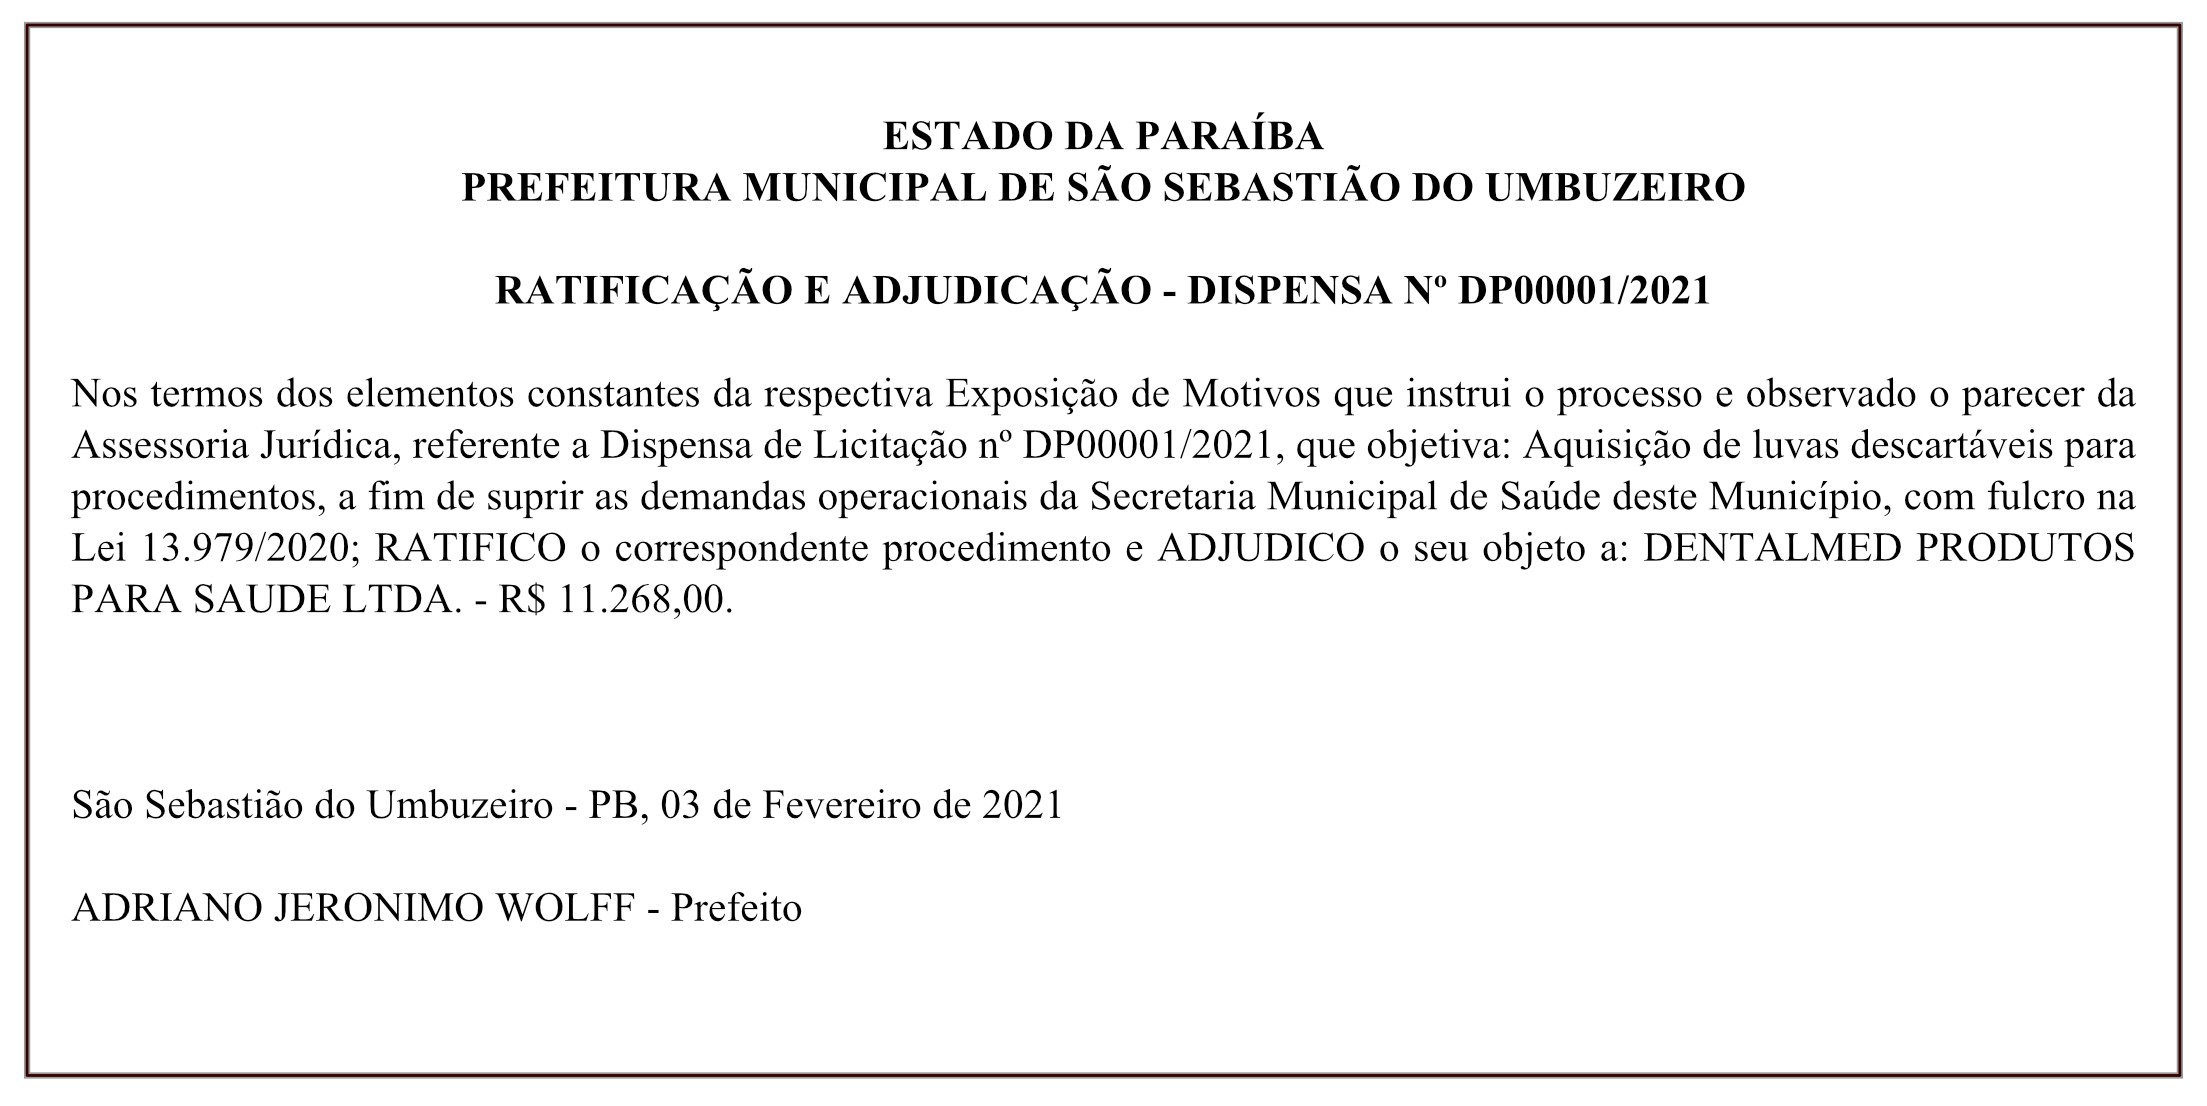 PREFEITURA MUNICIPAL DE SÃO SEBASTIÃO DO UMBUZEIRO- RATIFICAÇÃO E ADJUDICAÇÃO – DISPENSA Nº DP00001/2021